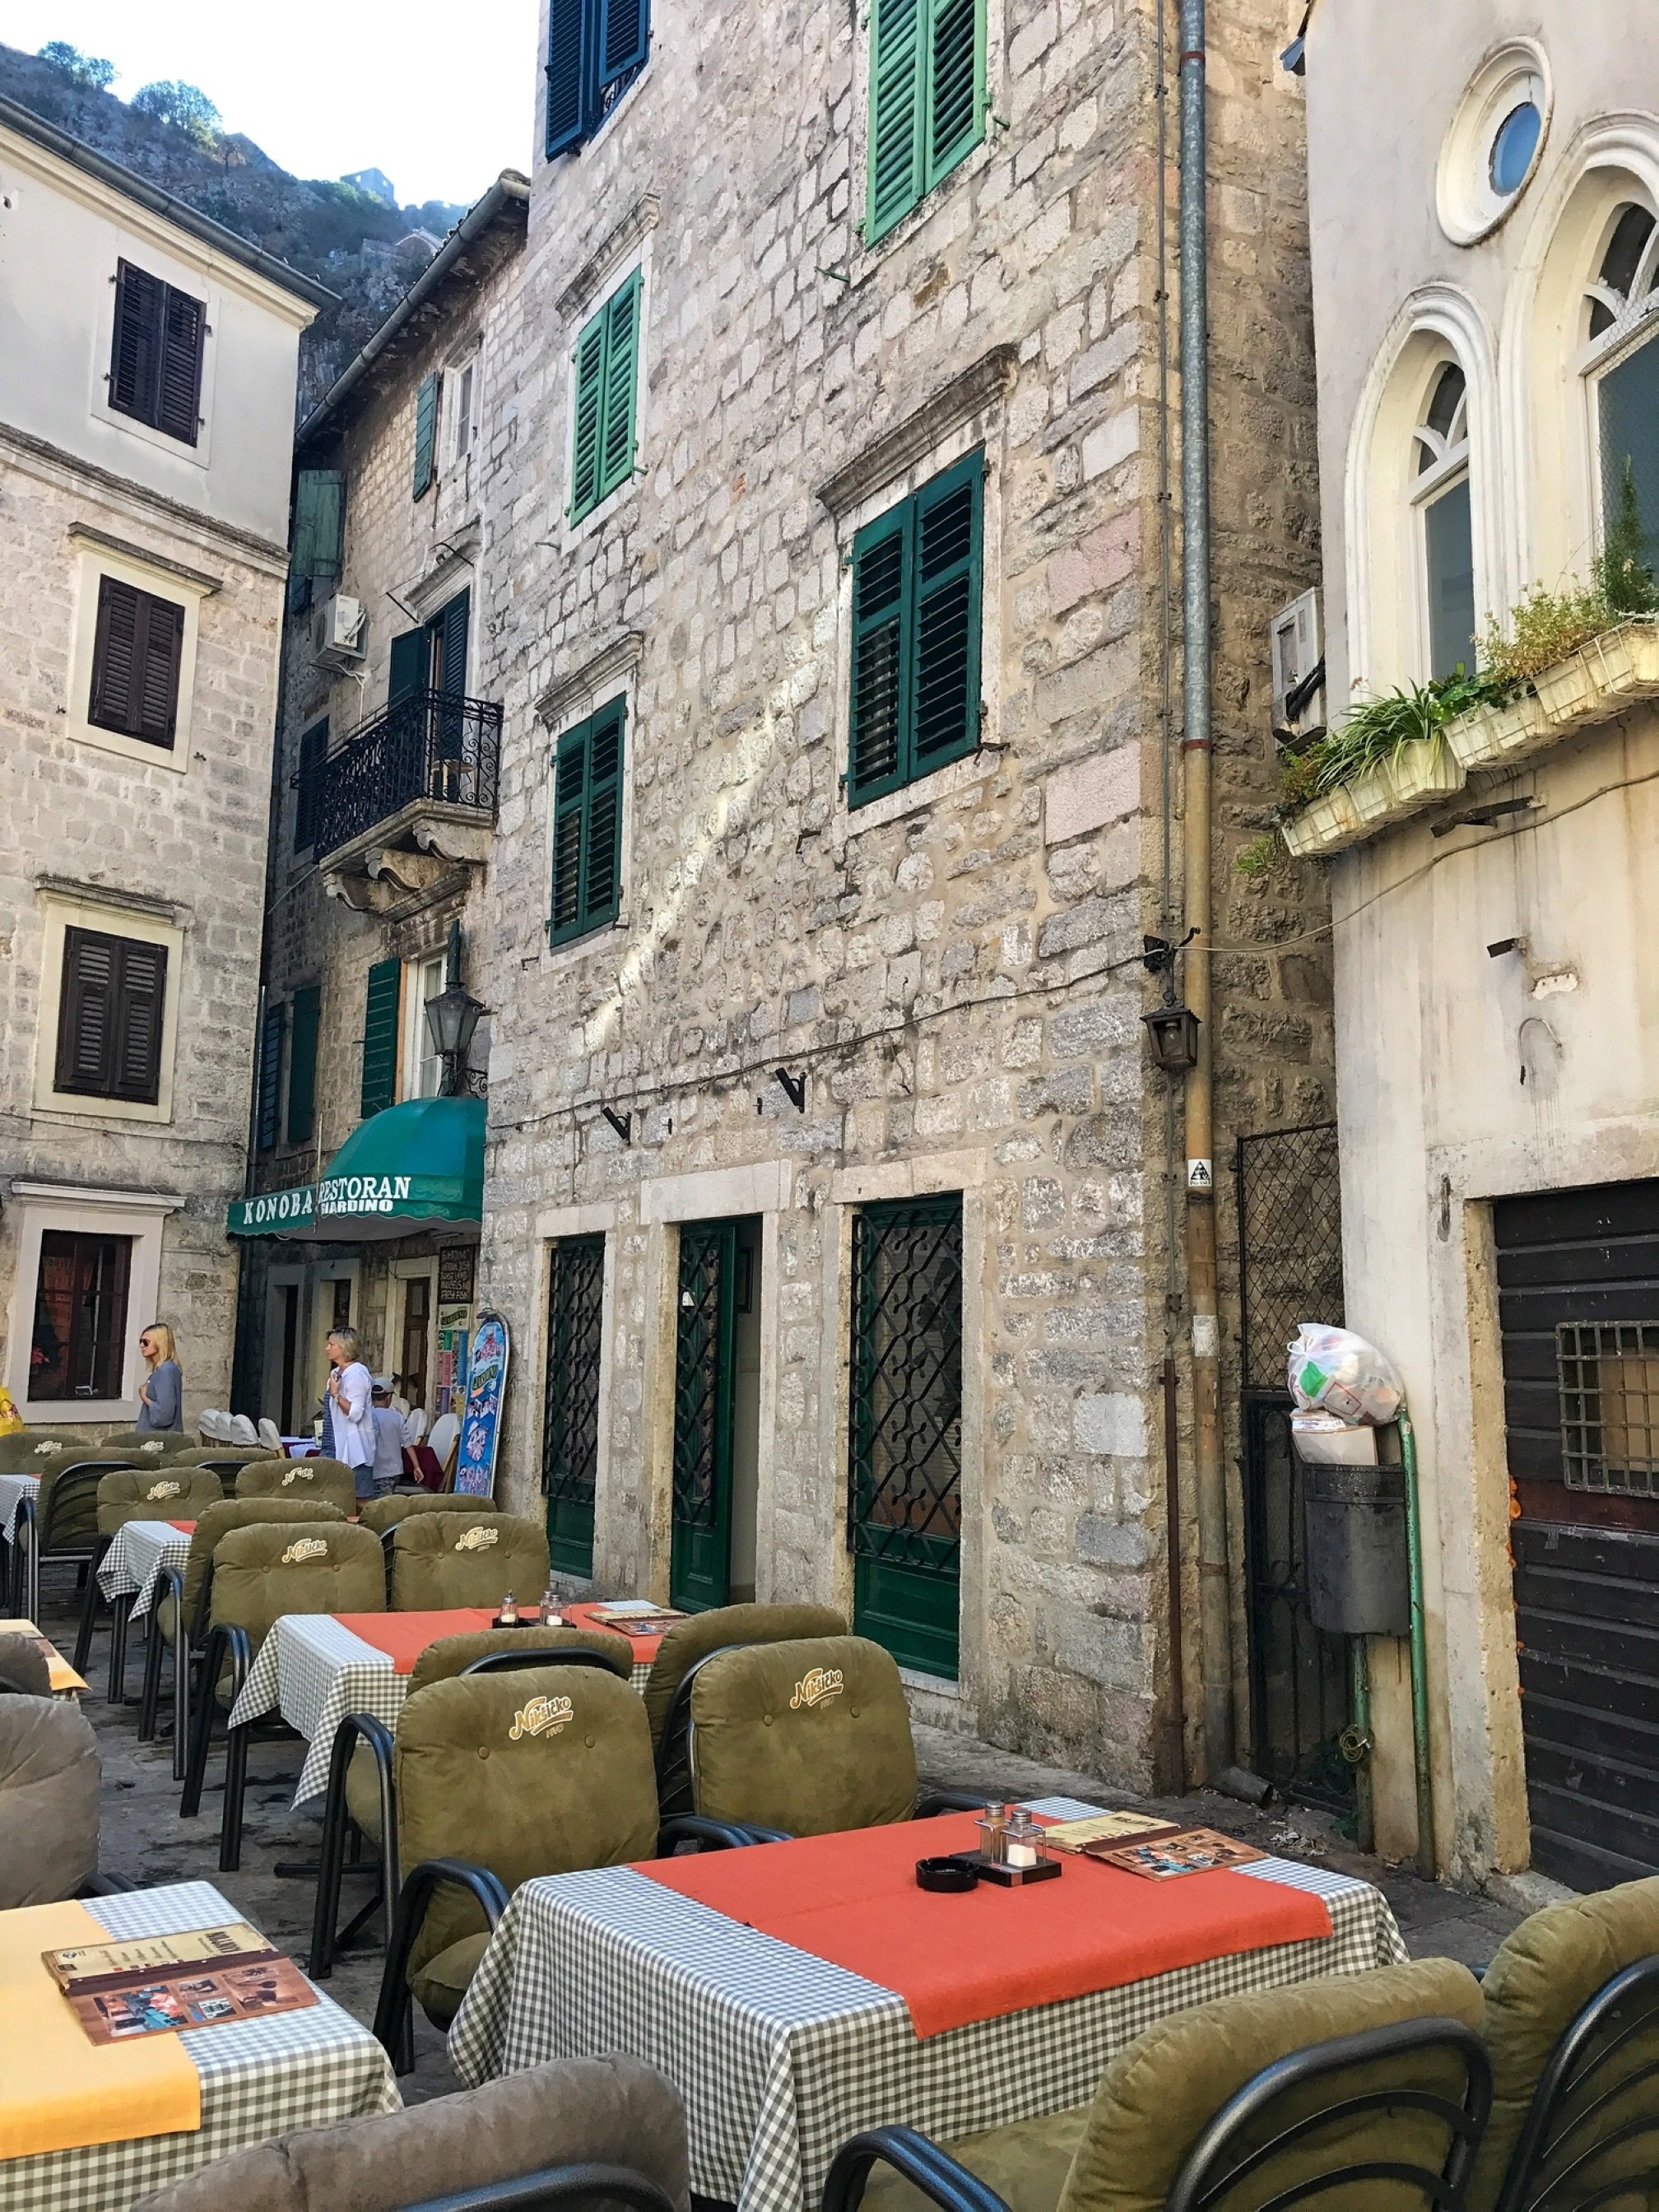 Kota tua di kota Kotor, Montenegro.  (Foto oleh zge engelen)